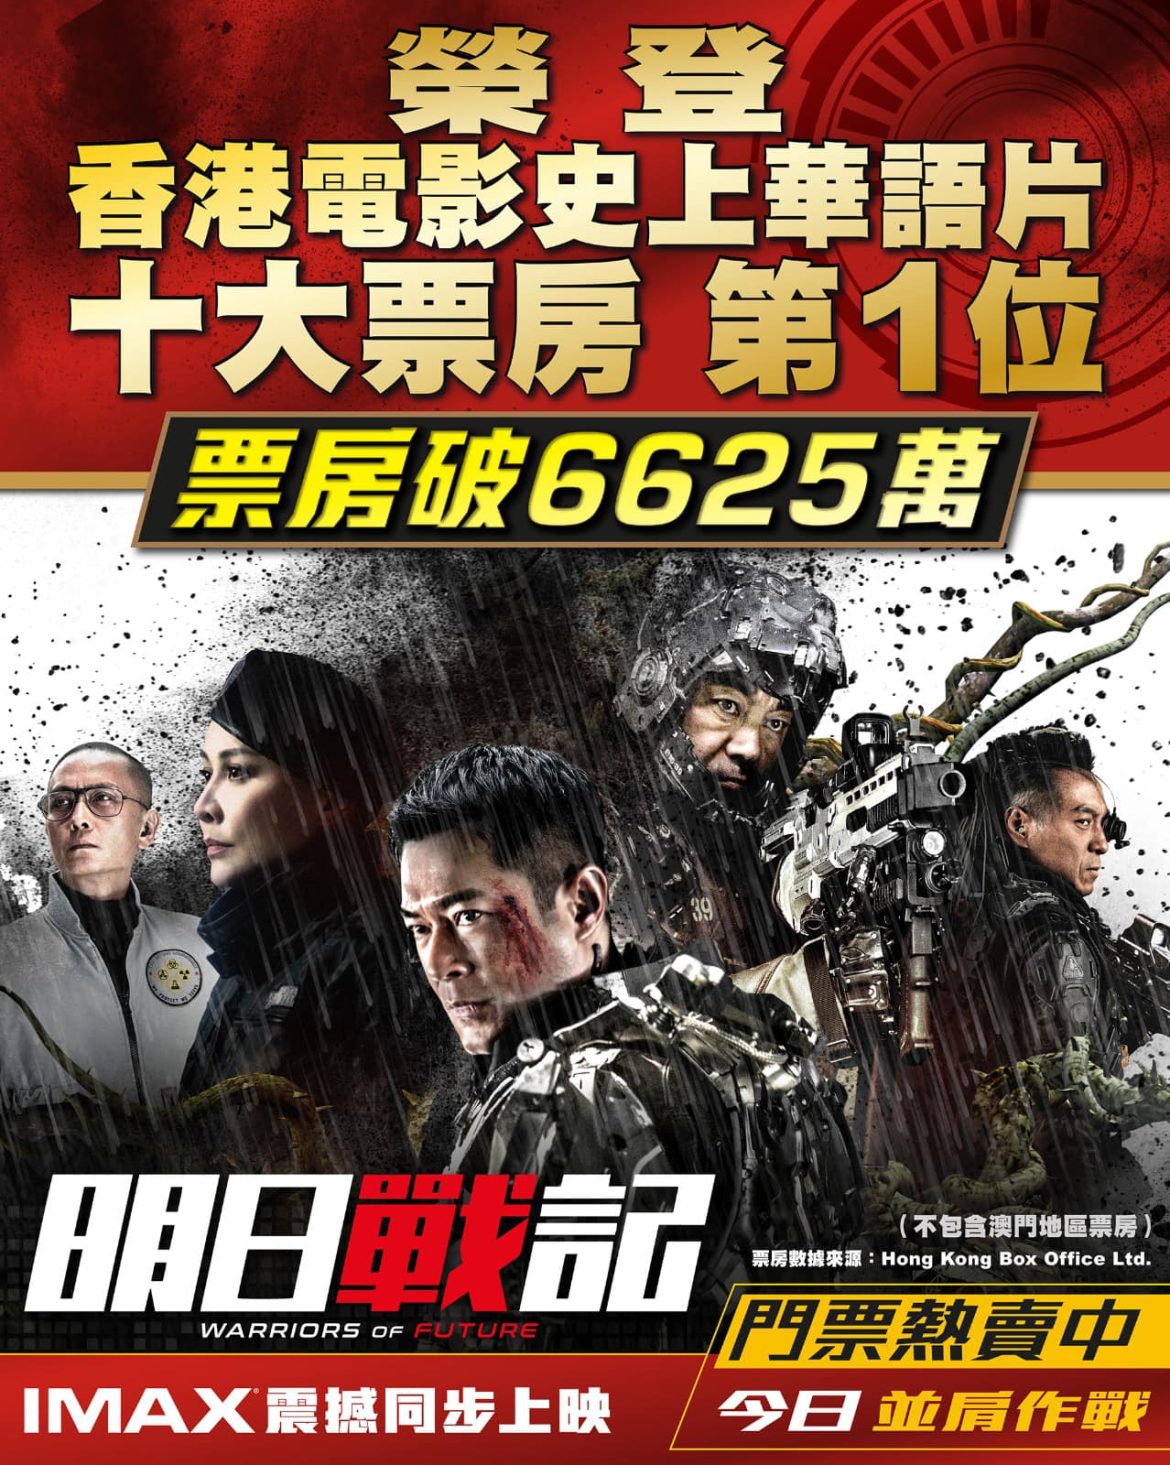 歷史性時刻到啦！傳說中的第一位！《明日戰記》最新票房衝破6625萬！真正成為香港電影史上華語片票房第一位！多謝全港觀眾萬眾一心支持！